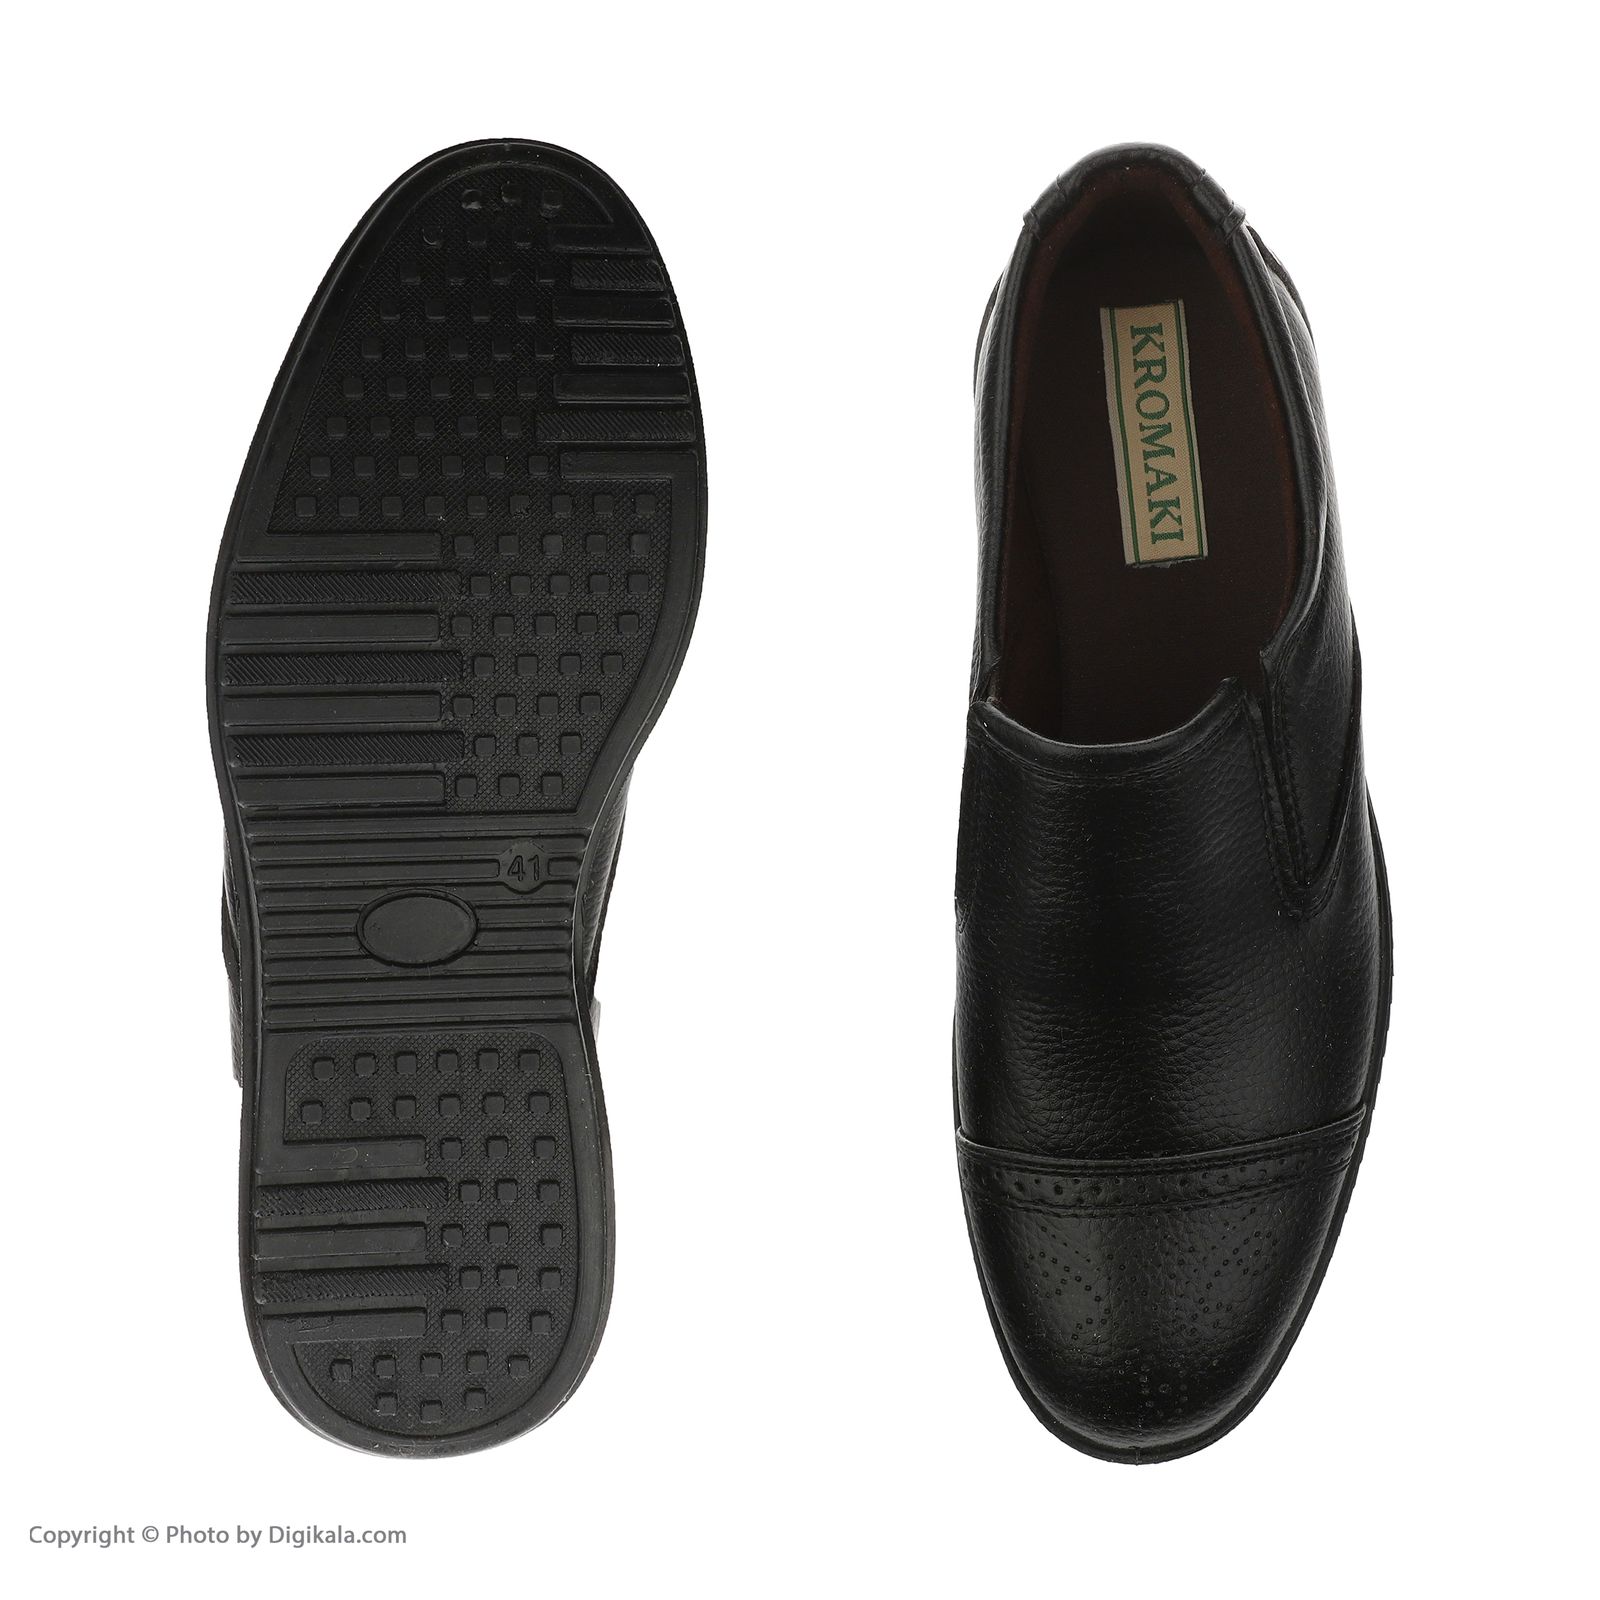 کفش روزمره مردانه کروماکی مدل طبی چرم مصنوعی فلوتر کد 1002 -  - 6